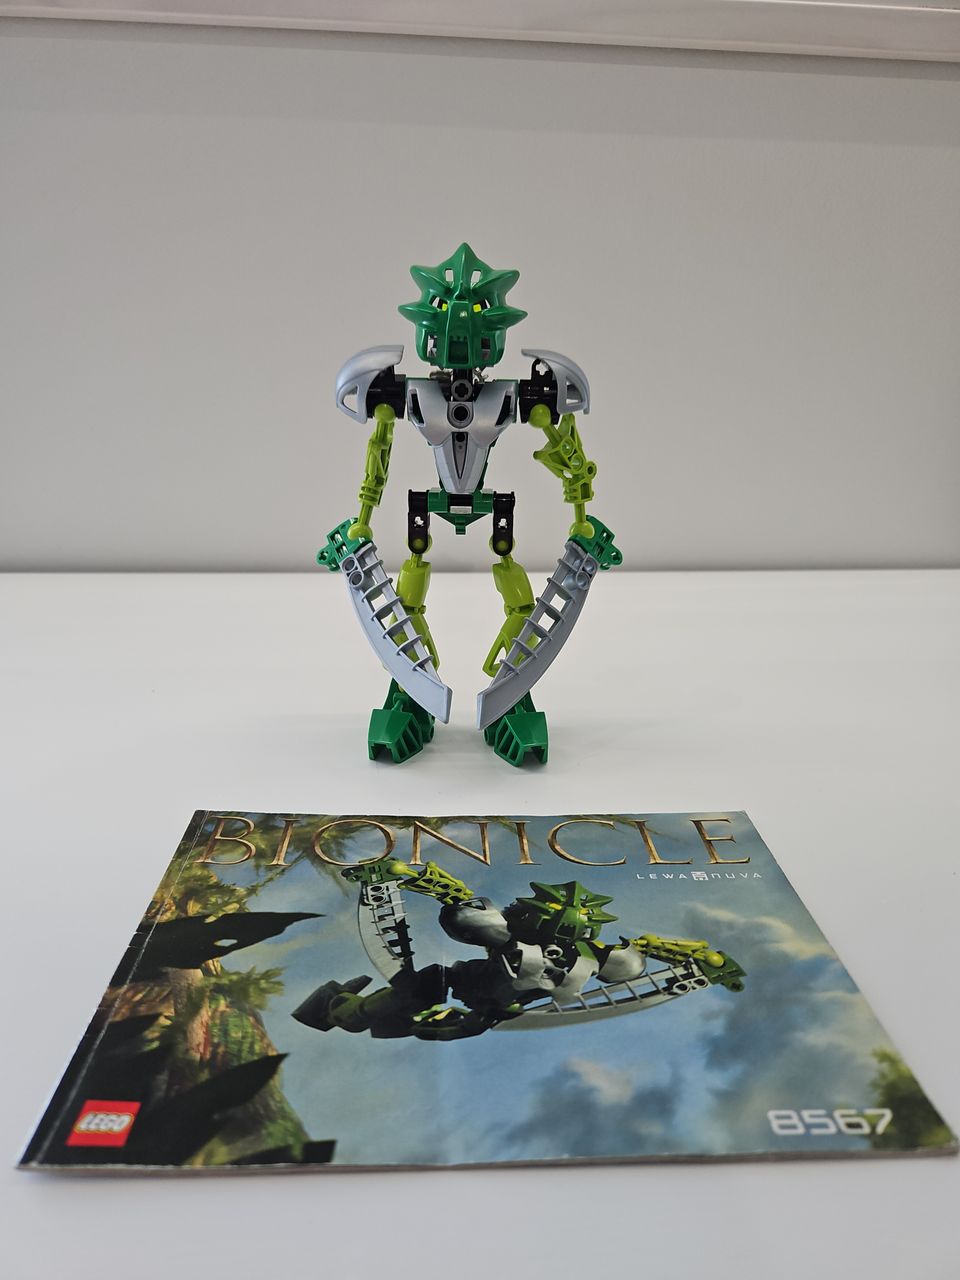 Lego Bionicle 8567: Lewa Nuva